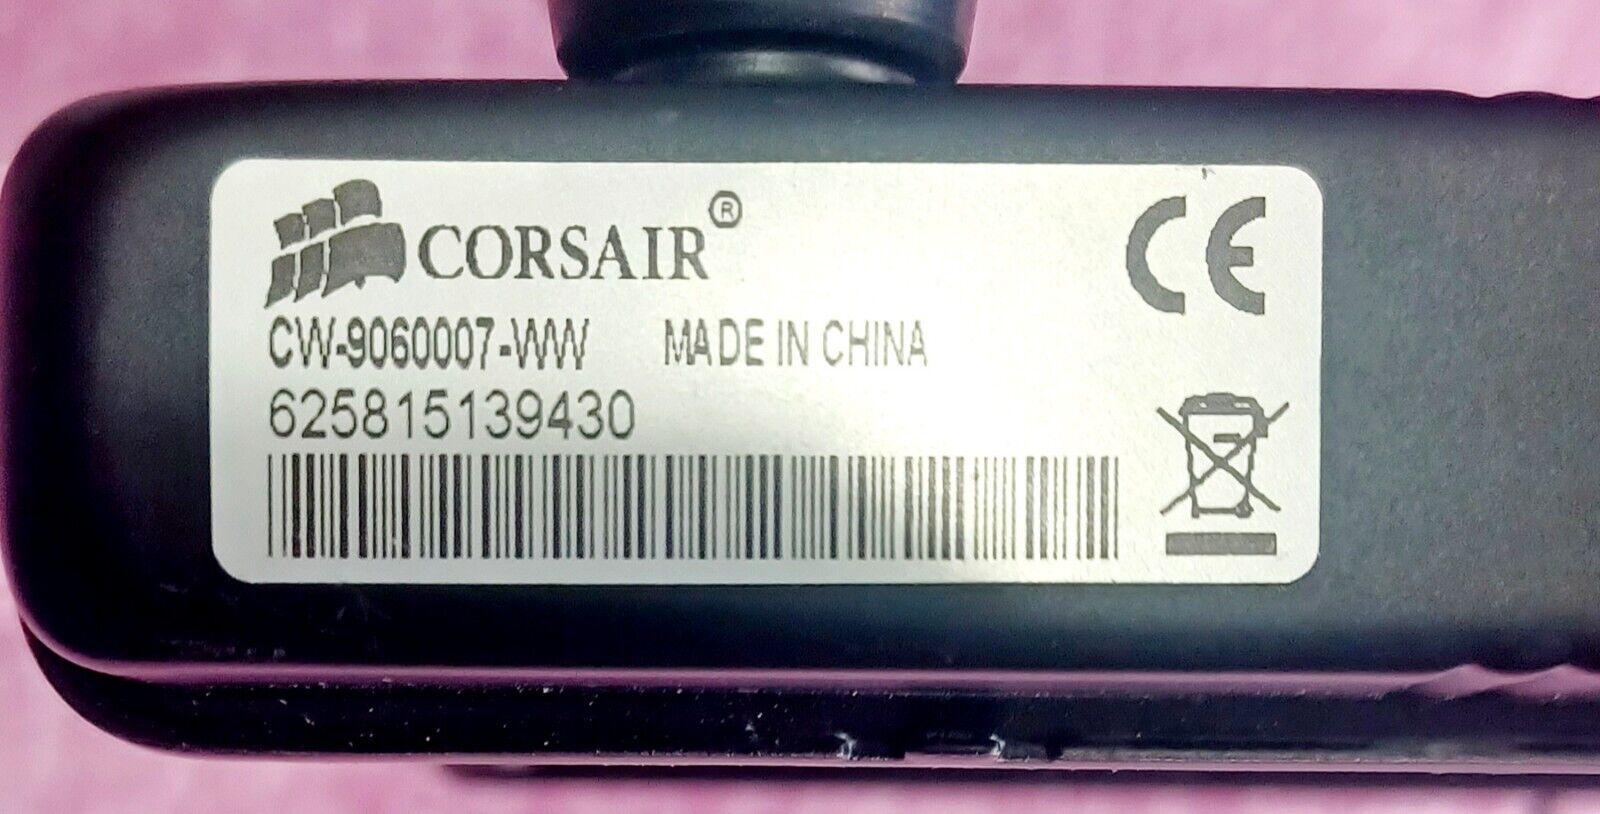 CORSAIR HYDRO/SERIES H60 CW 9060007WW.HIGH PERFORMANCE WATER/LIQUID CPU COOLER